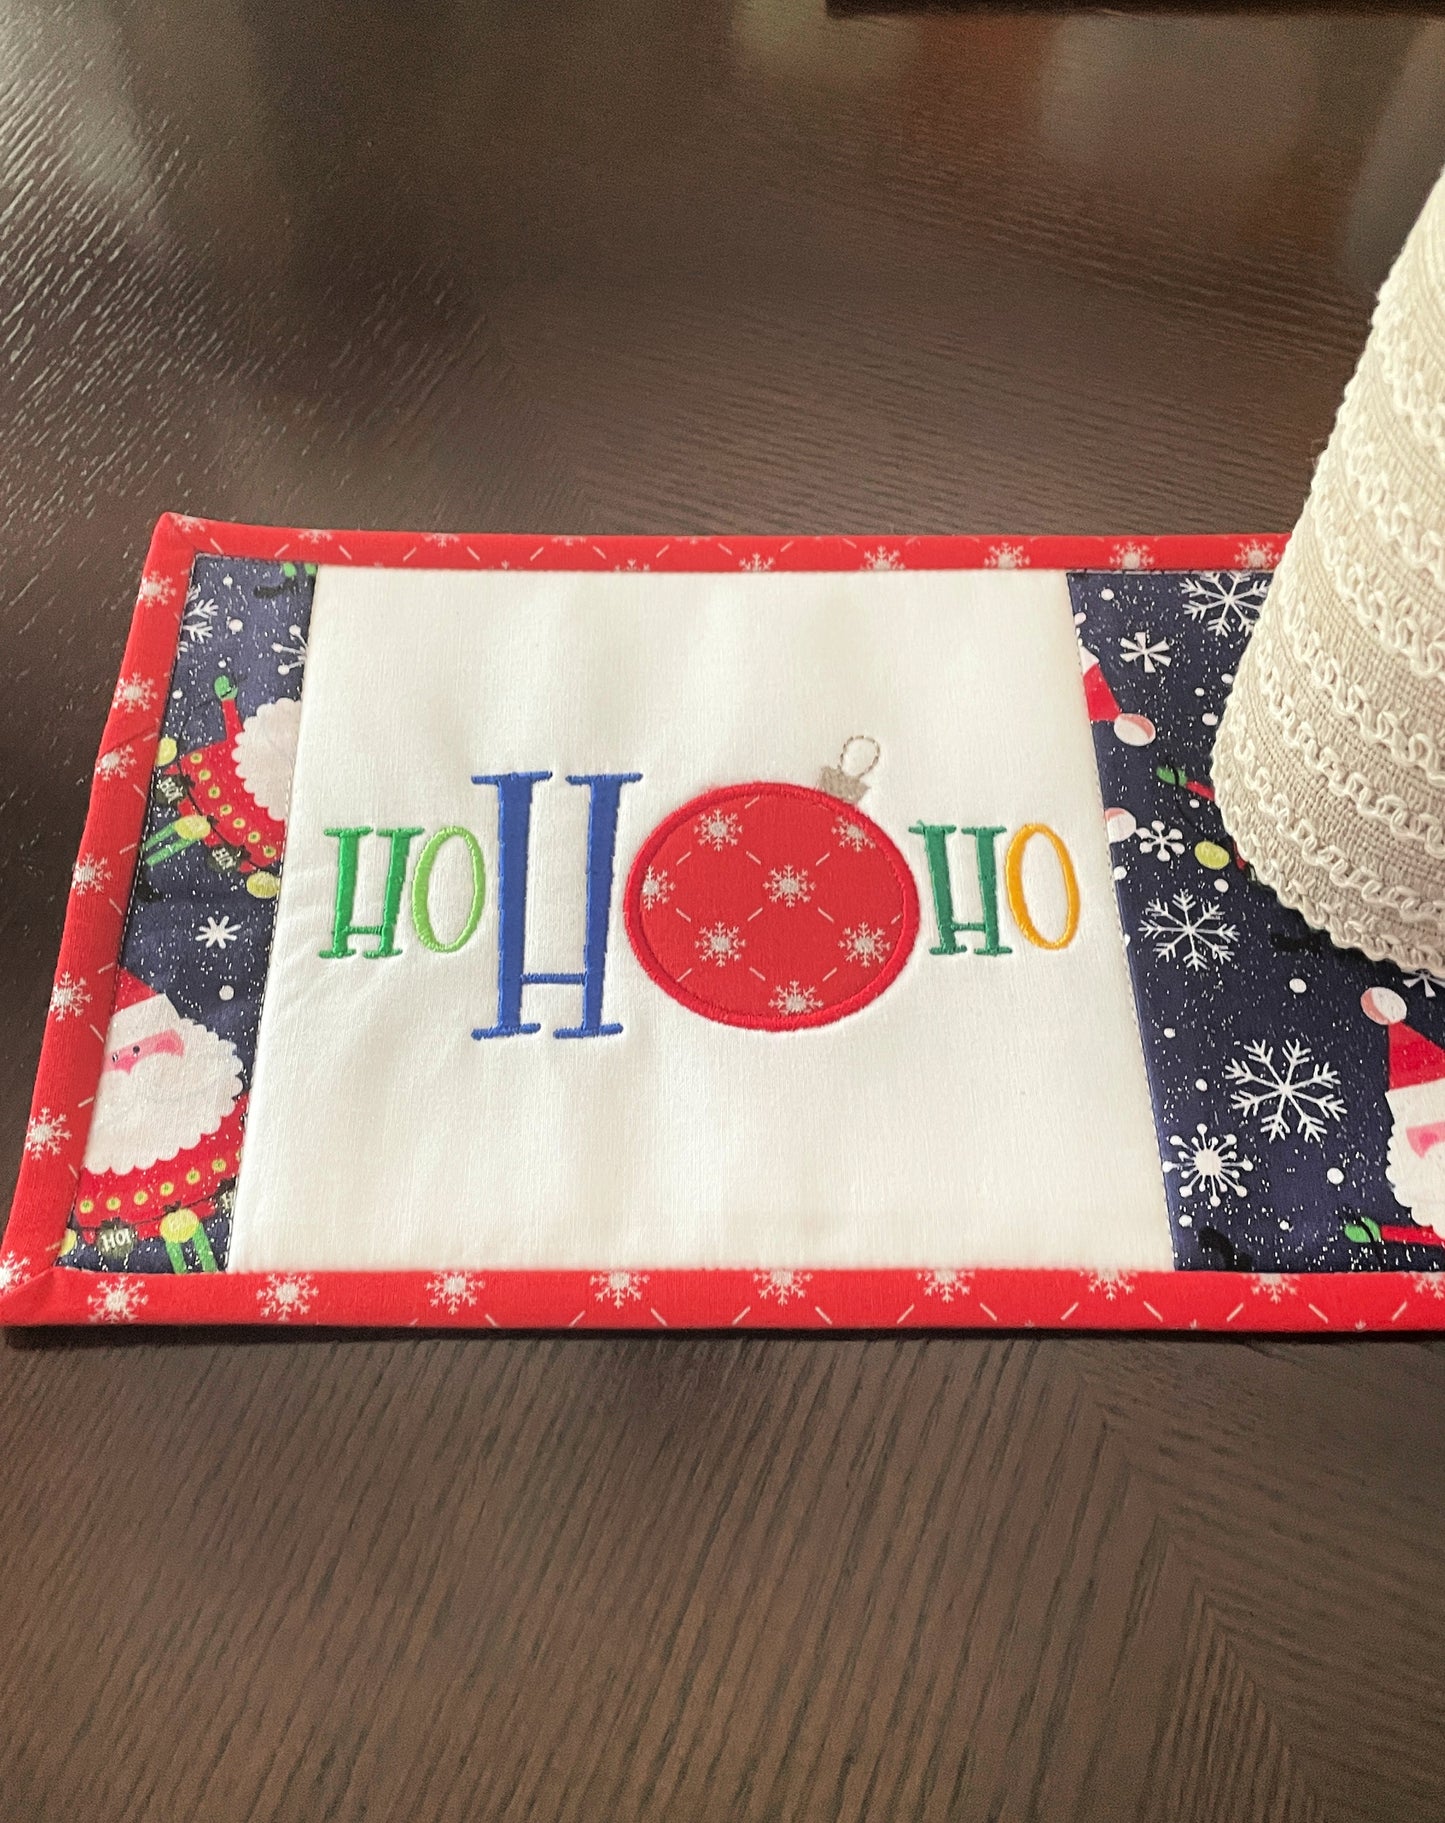 Quilted Christmas Mug Rug – Ho Ho Ho Santa Ornaments